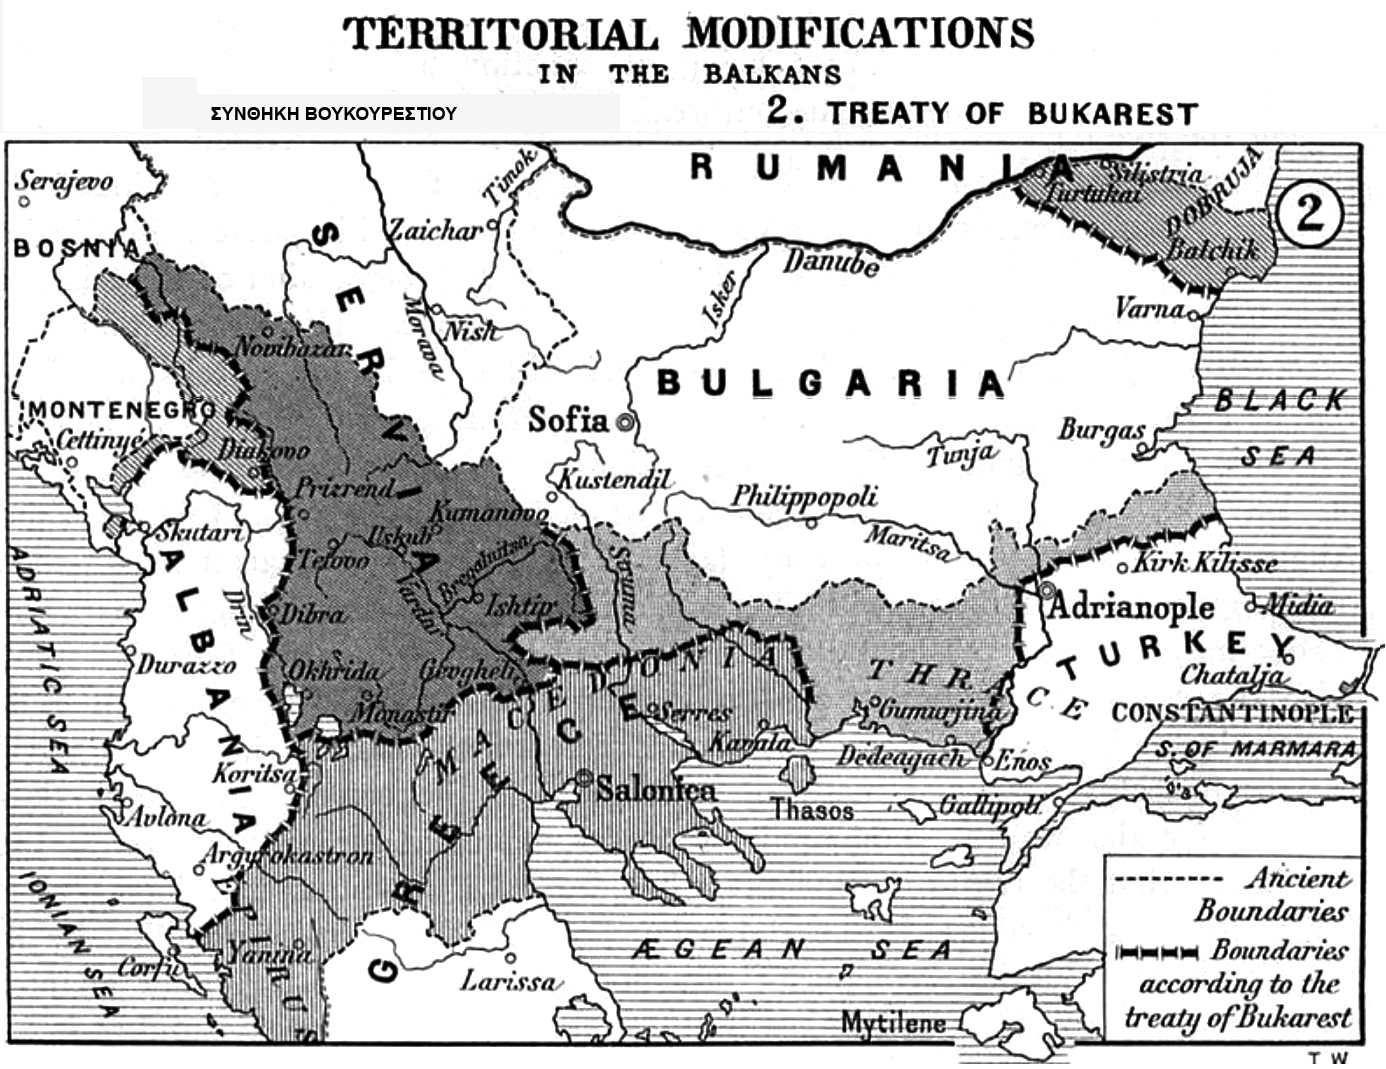 Η Συνθήκη του Βουκουρεστίου το 1913 ΔΕΝ αναφέρει ότι η Μακεδονία μοιράστηκε μεταξύ Γιουγκοσλαβίας, Ελλάδος και Βουλγαρίας! | ΑΡΧΕΙΟΝ ΠΟΛΙΤΙΣΜΟΥ